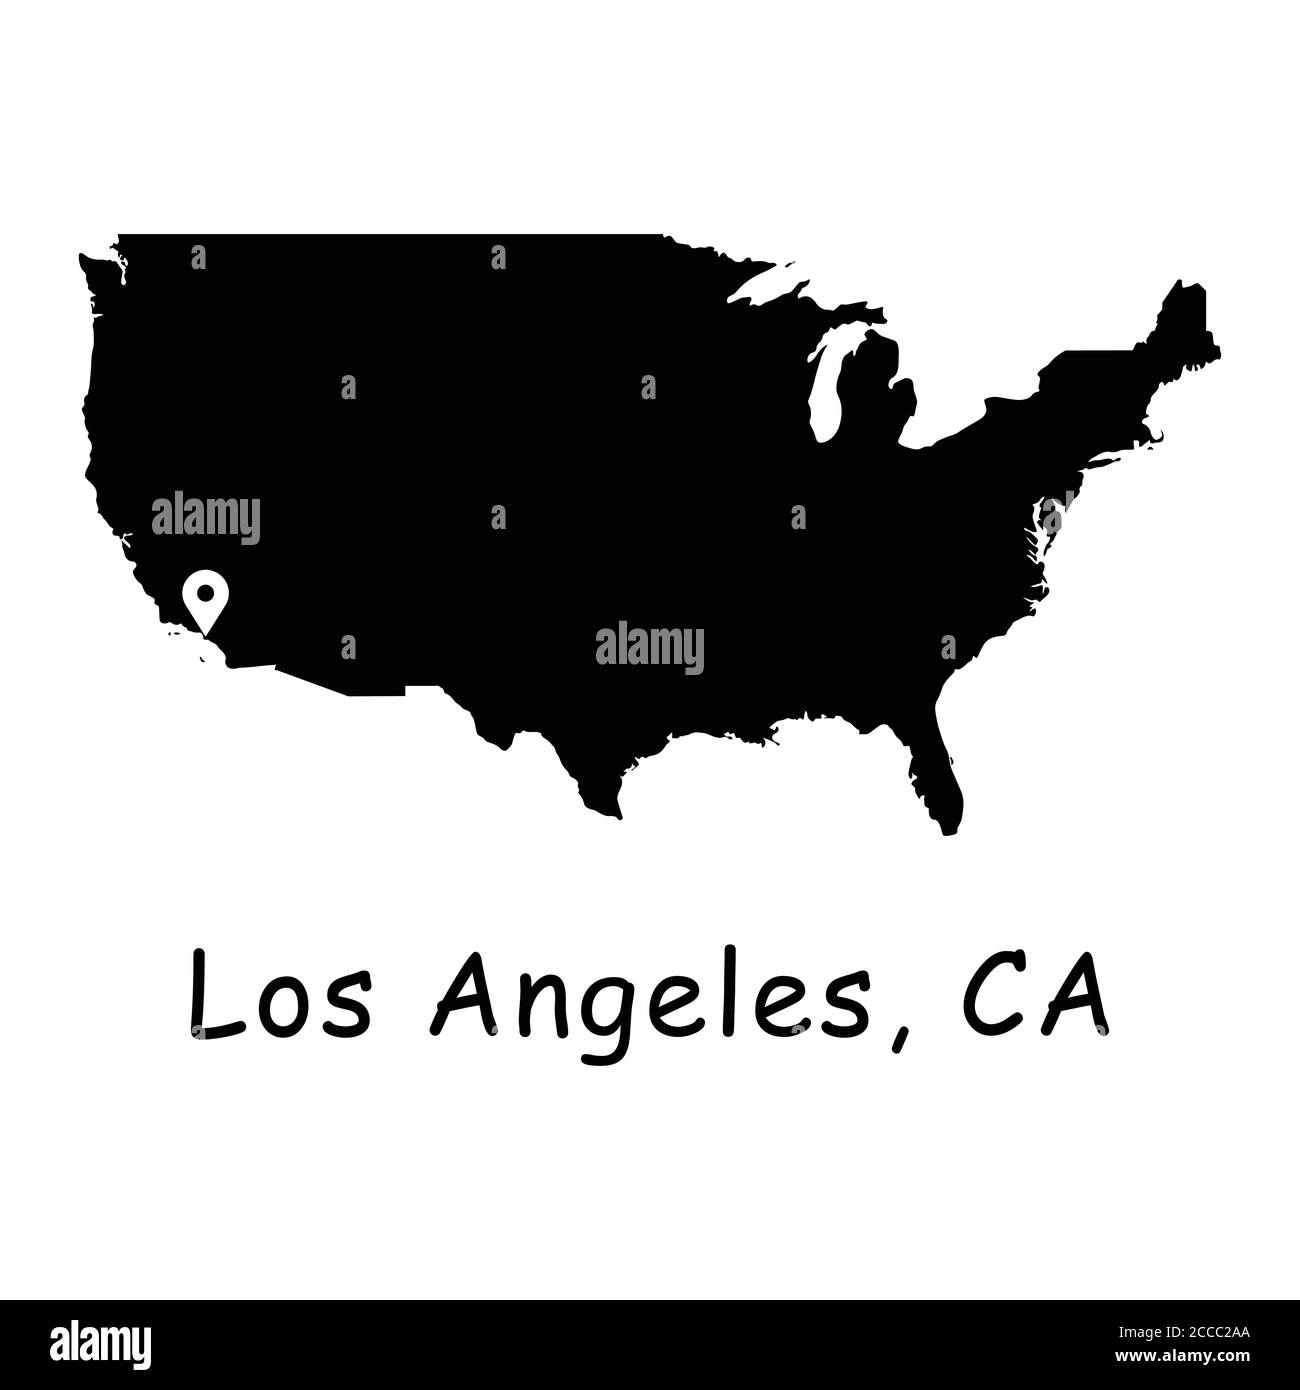 Ville de Los Angeles sur la carte des Etats-Unis. Carte détaillée des pays d'Amérique avec broche d'emplacement sur L.A. Cartes vectorielles silhouettes noires isolées sur fond blanc. Illustration de Vecteur